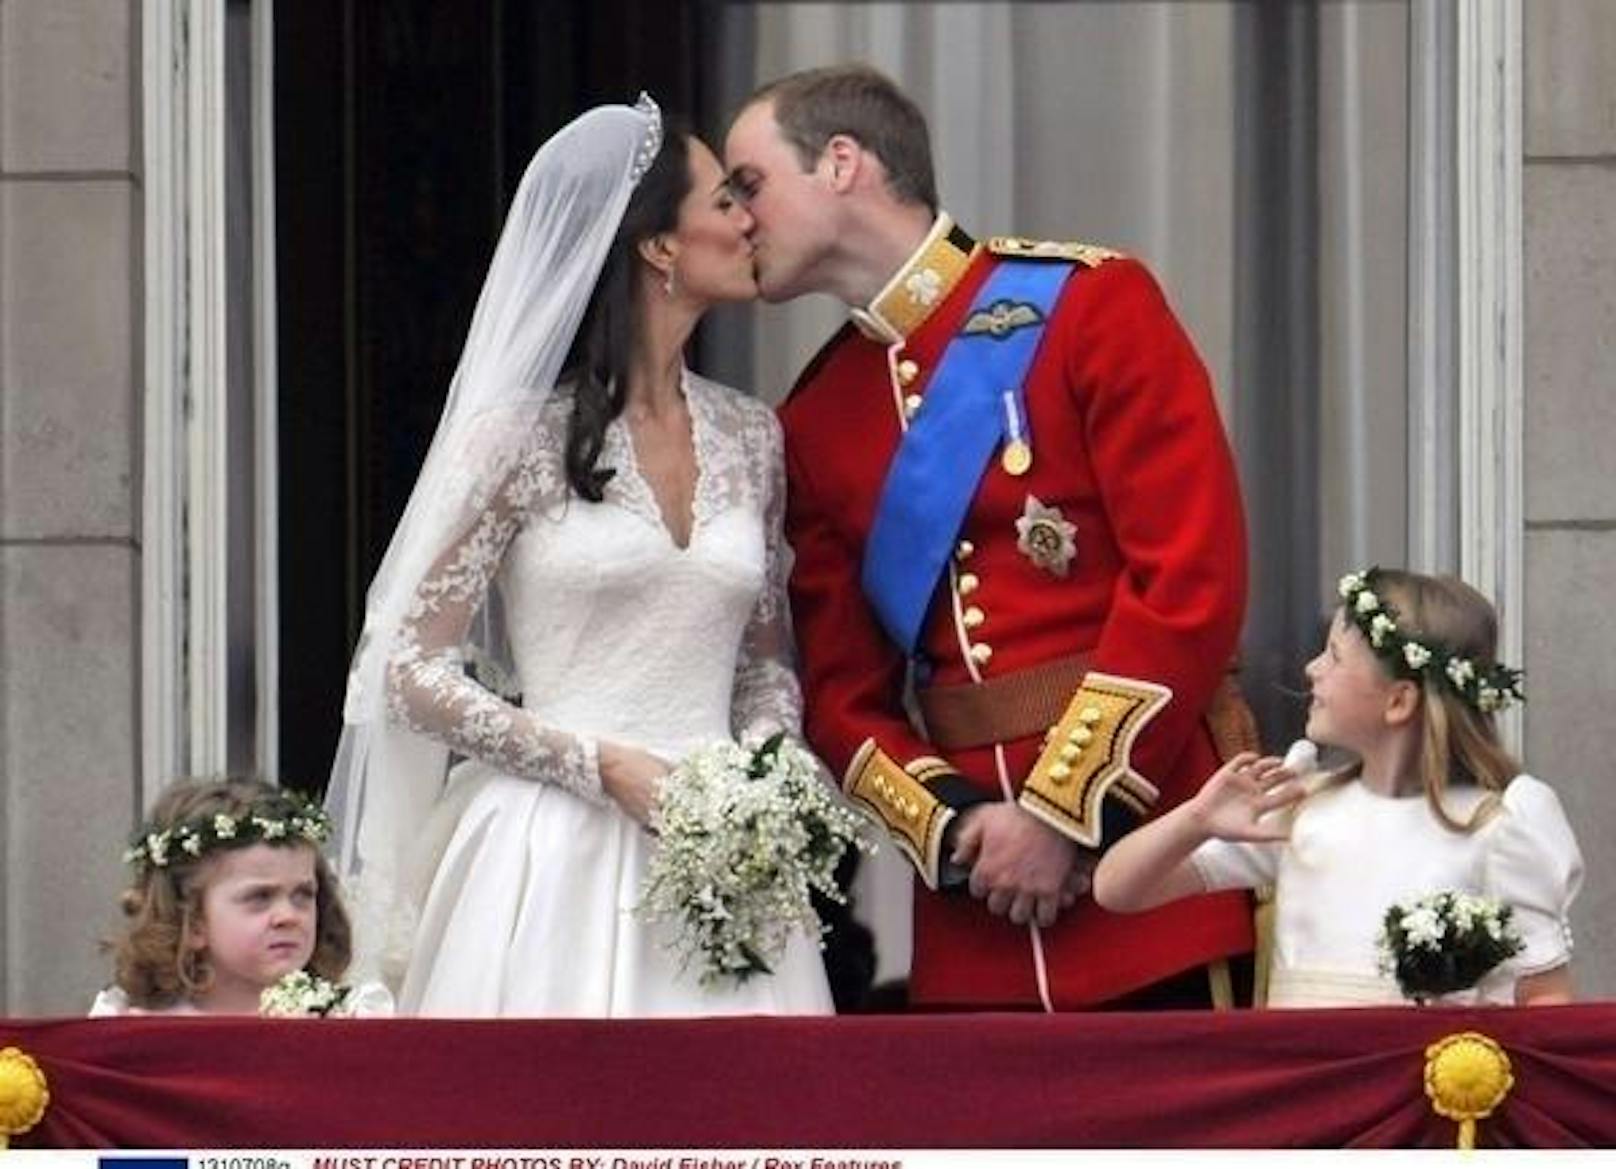 Ein Foto geht um die Welt: Prinz William und Kate Middleton sagen am 29. April 2011 "Yes, I do"